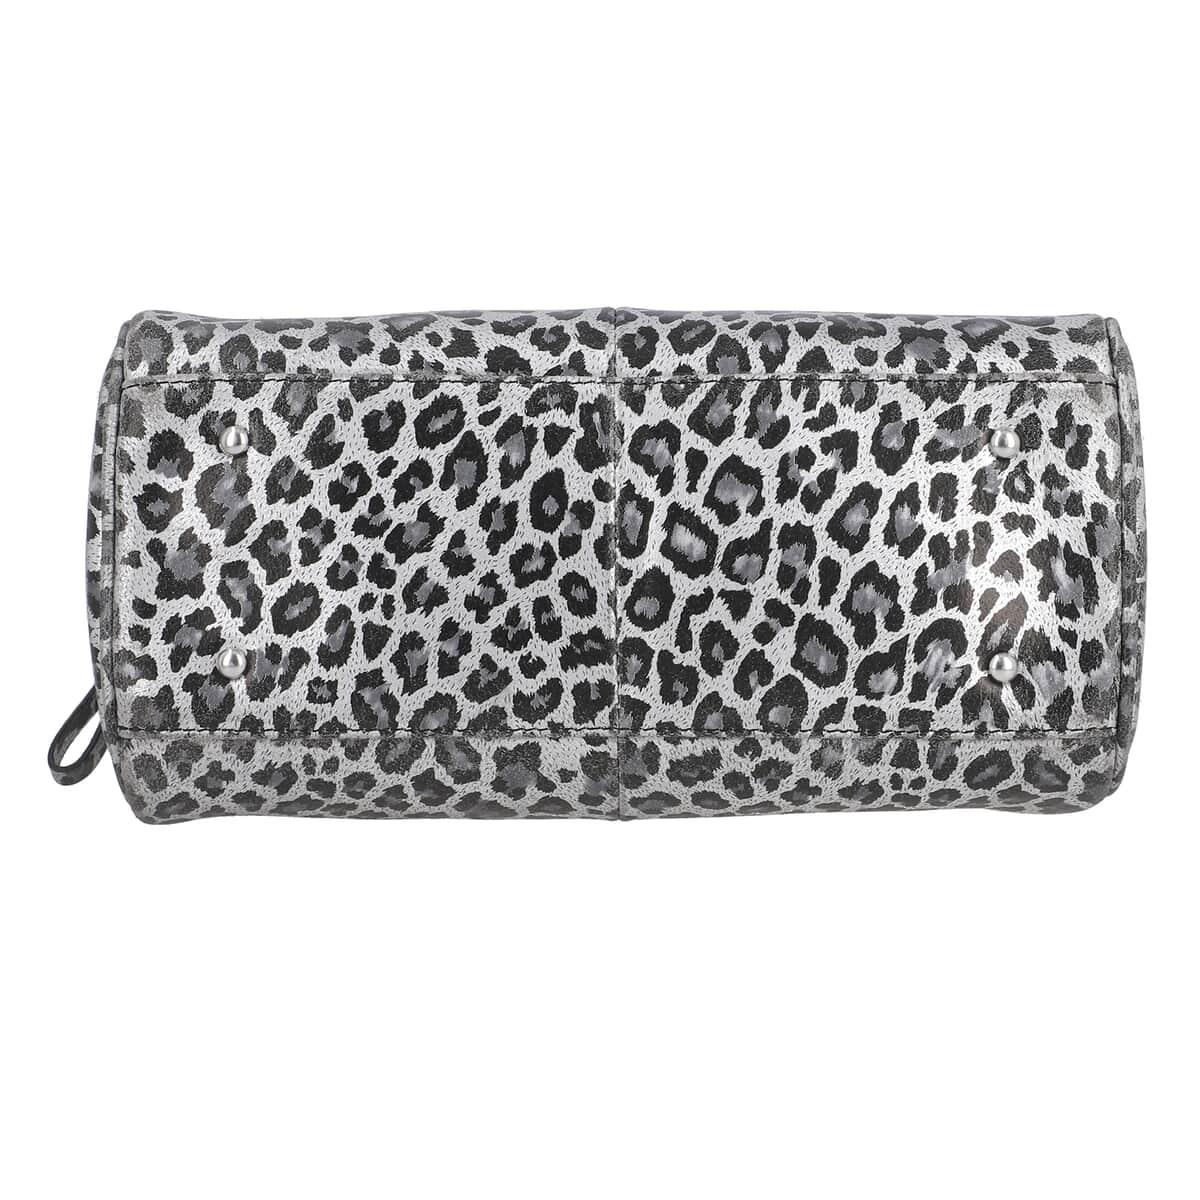 "Leopardskin Foiled Shoulder Bag SIZE: 11.4(L)x3.94(W)x9(H) Inches COLOR: Grey & Black" image number 5